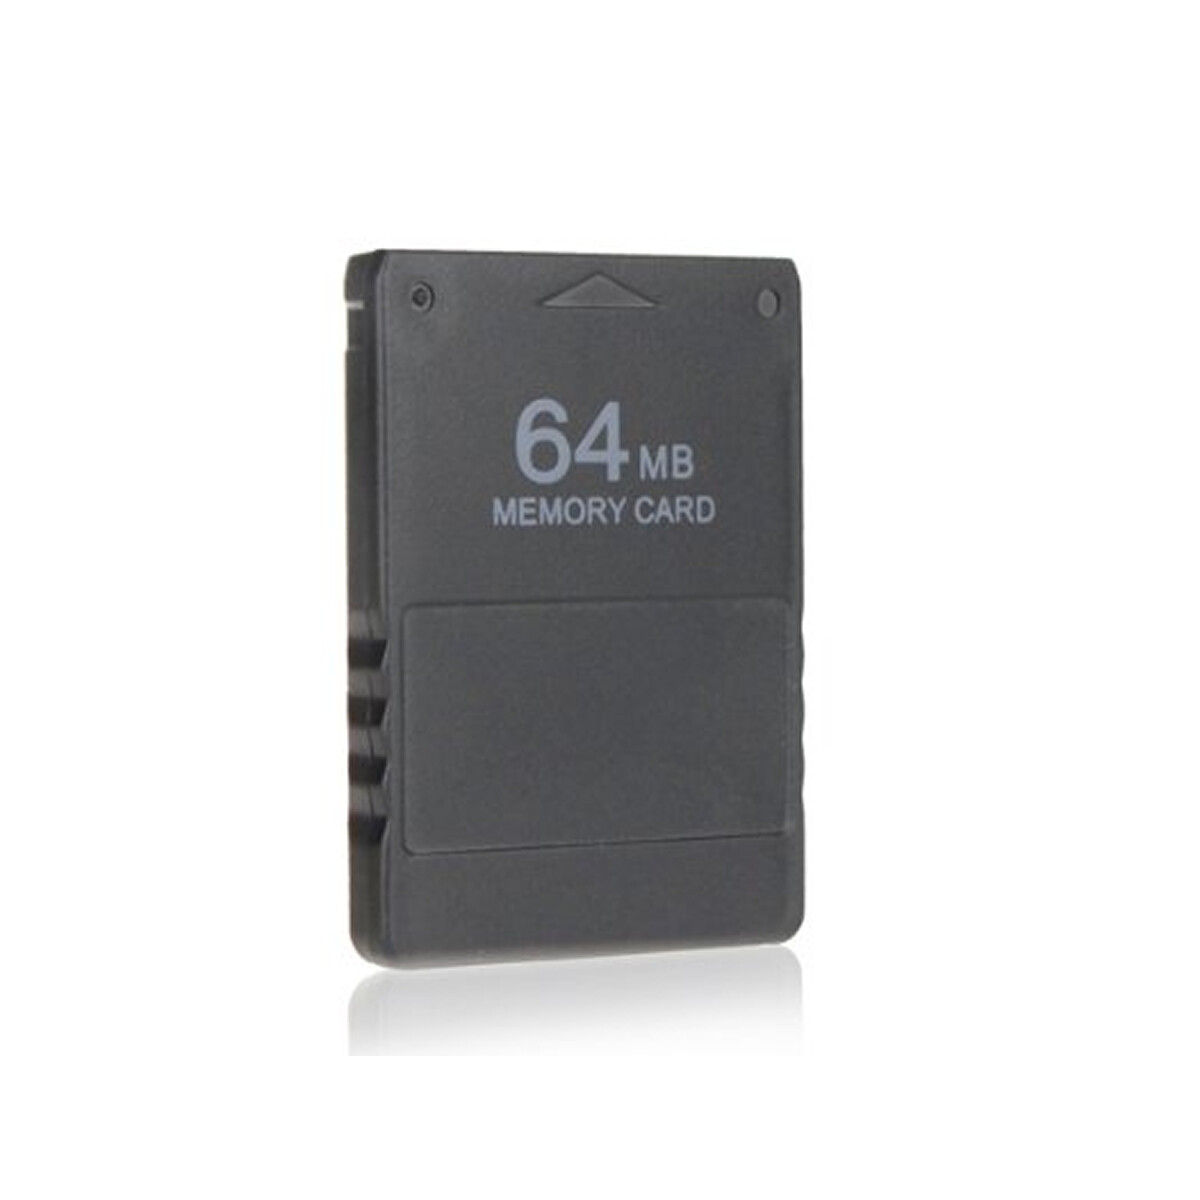 Memory Card PS2 64 MB Playstation 2 